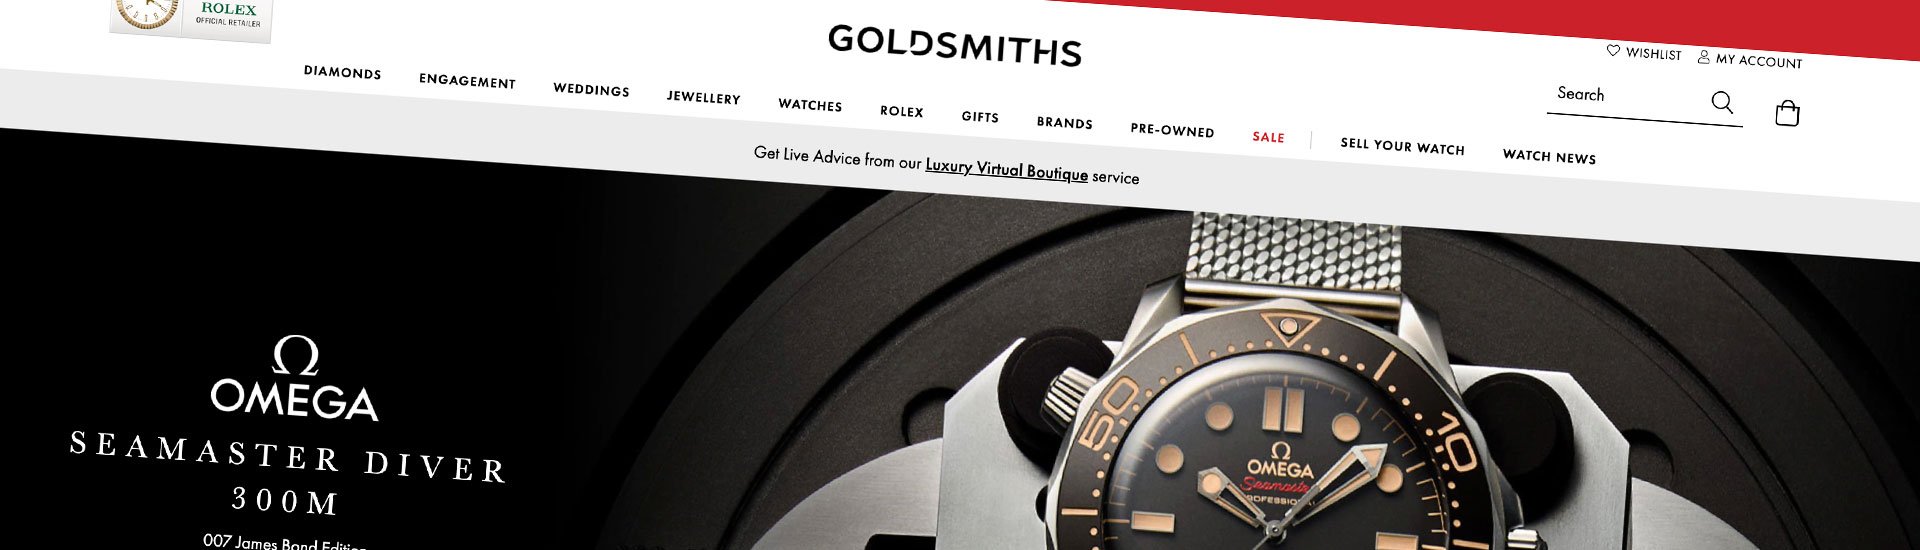 Goldsmiths website